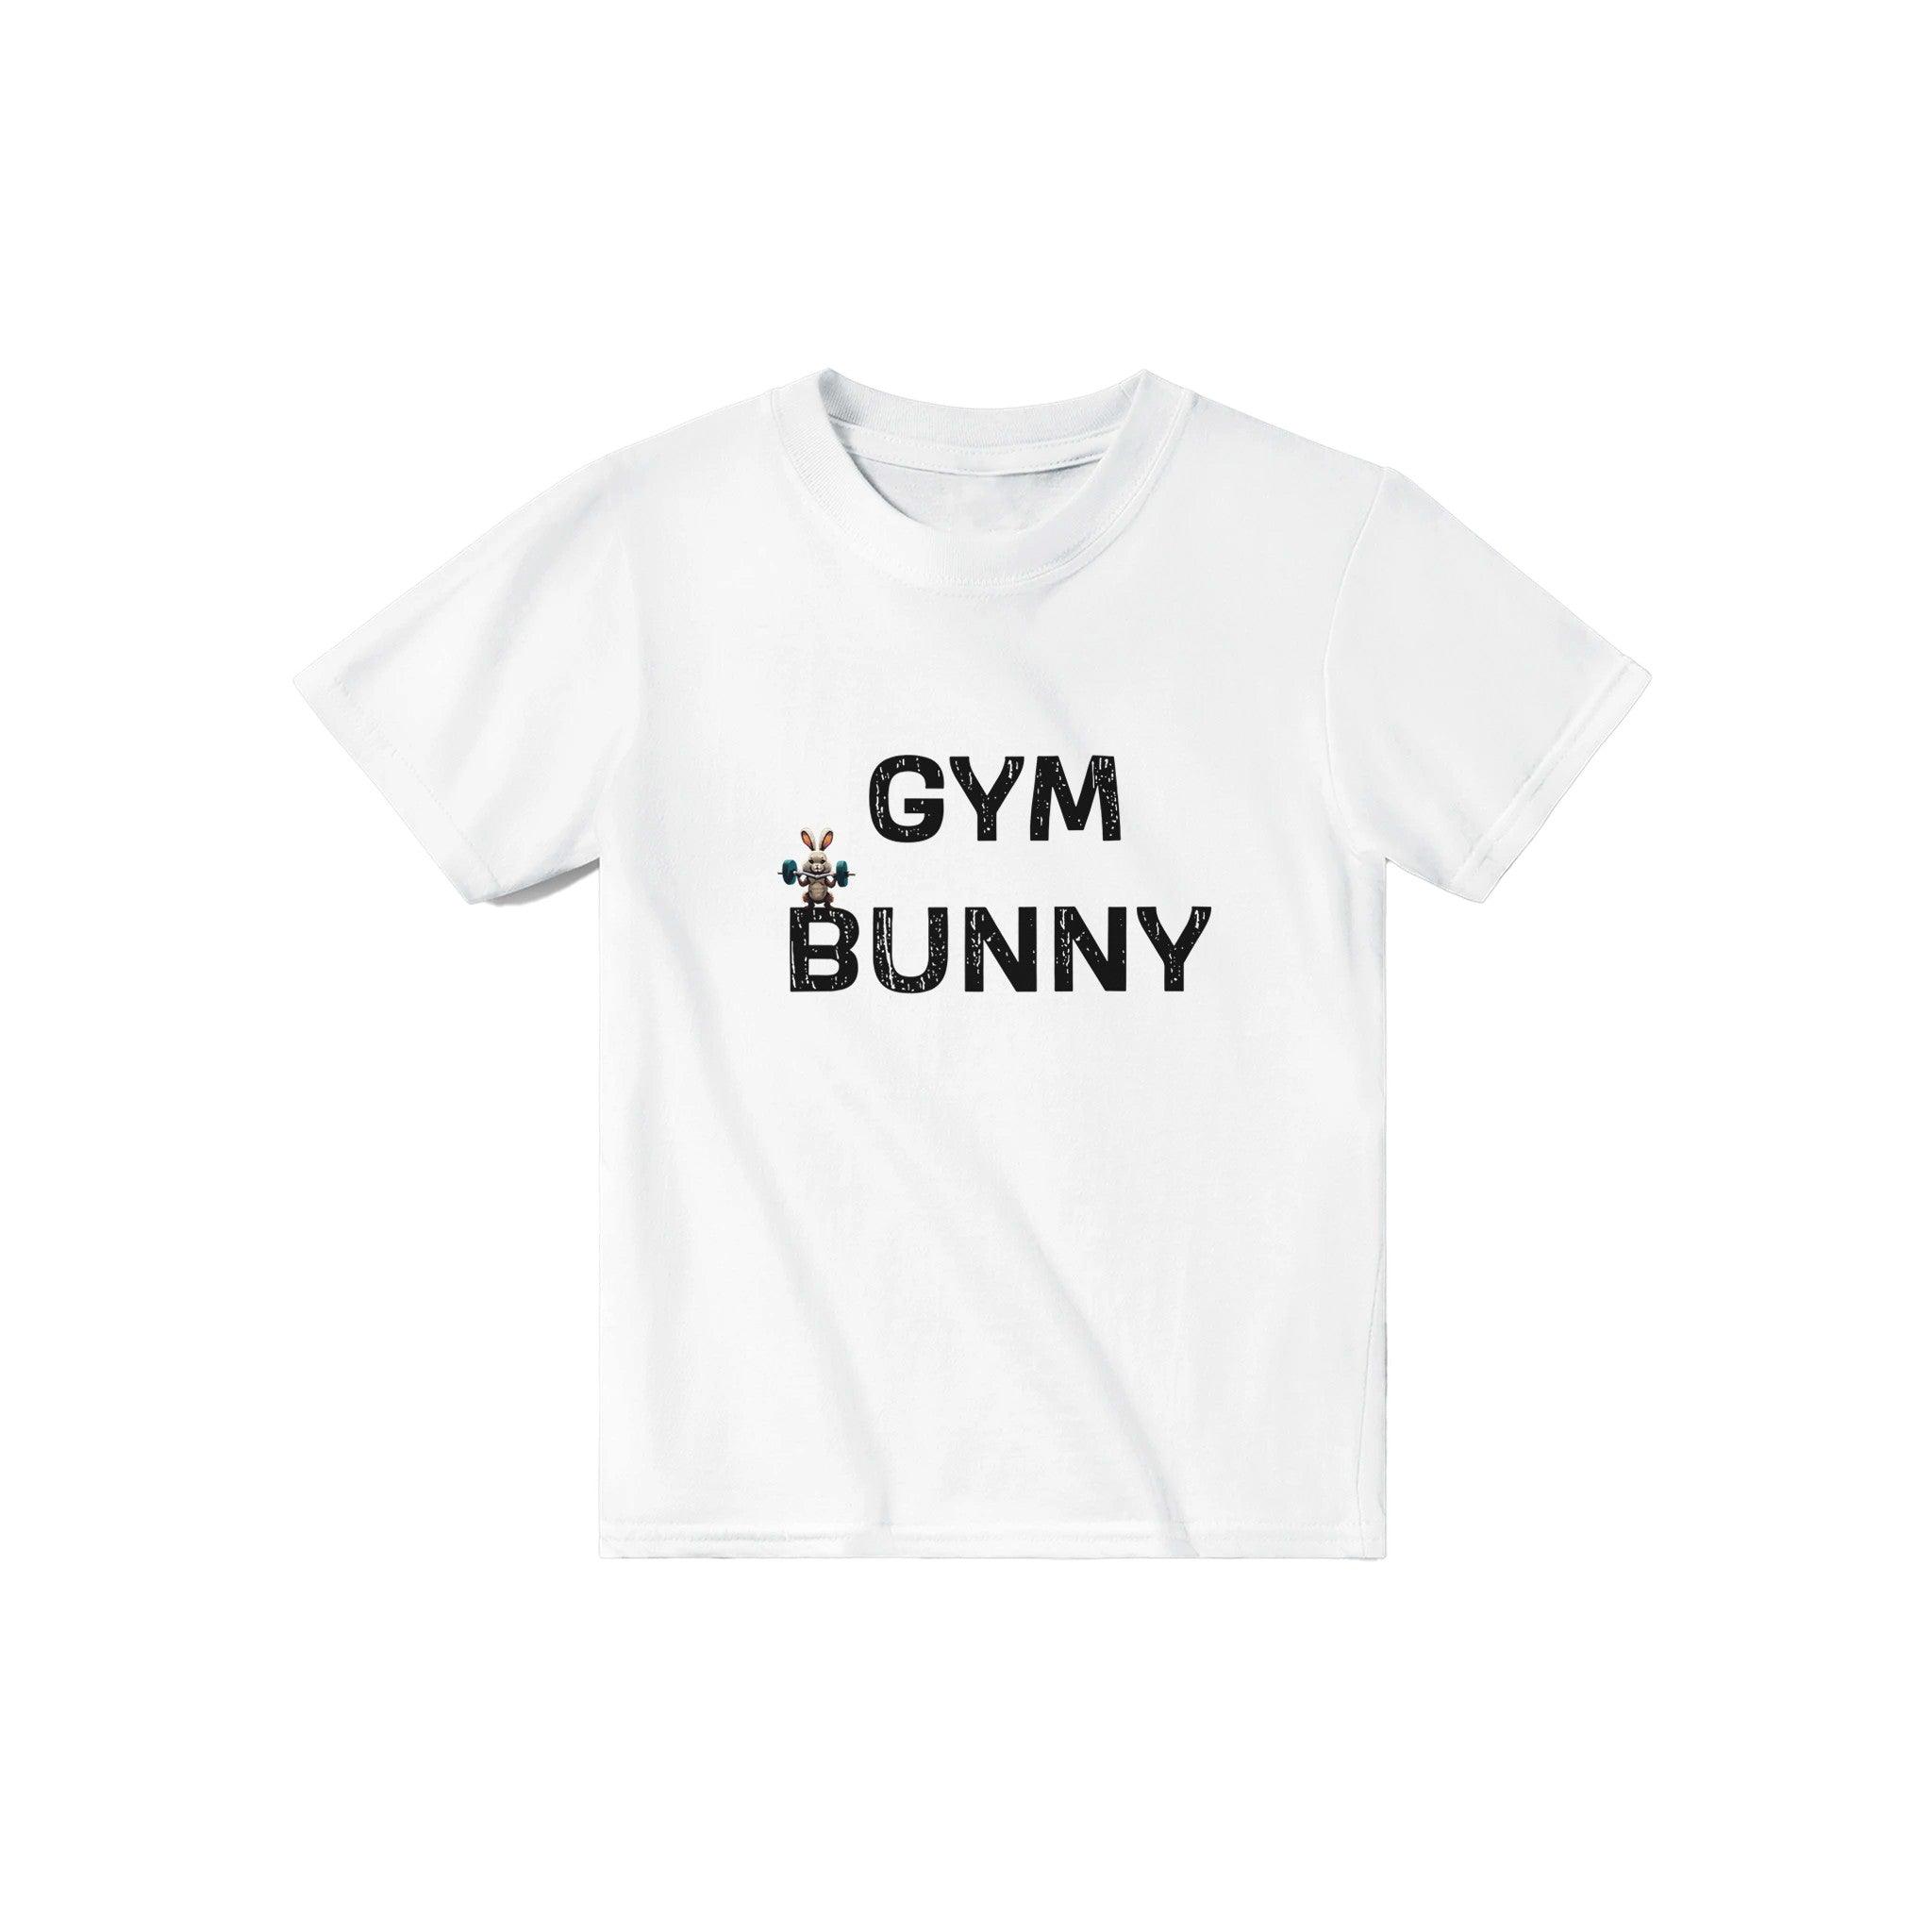 'Gym Bunny' Baby Tee - POMA